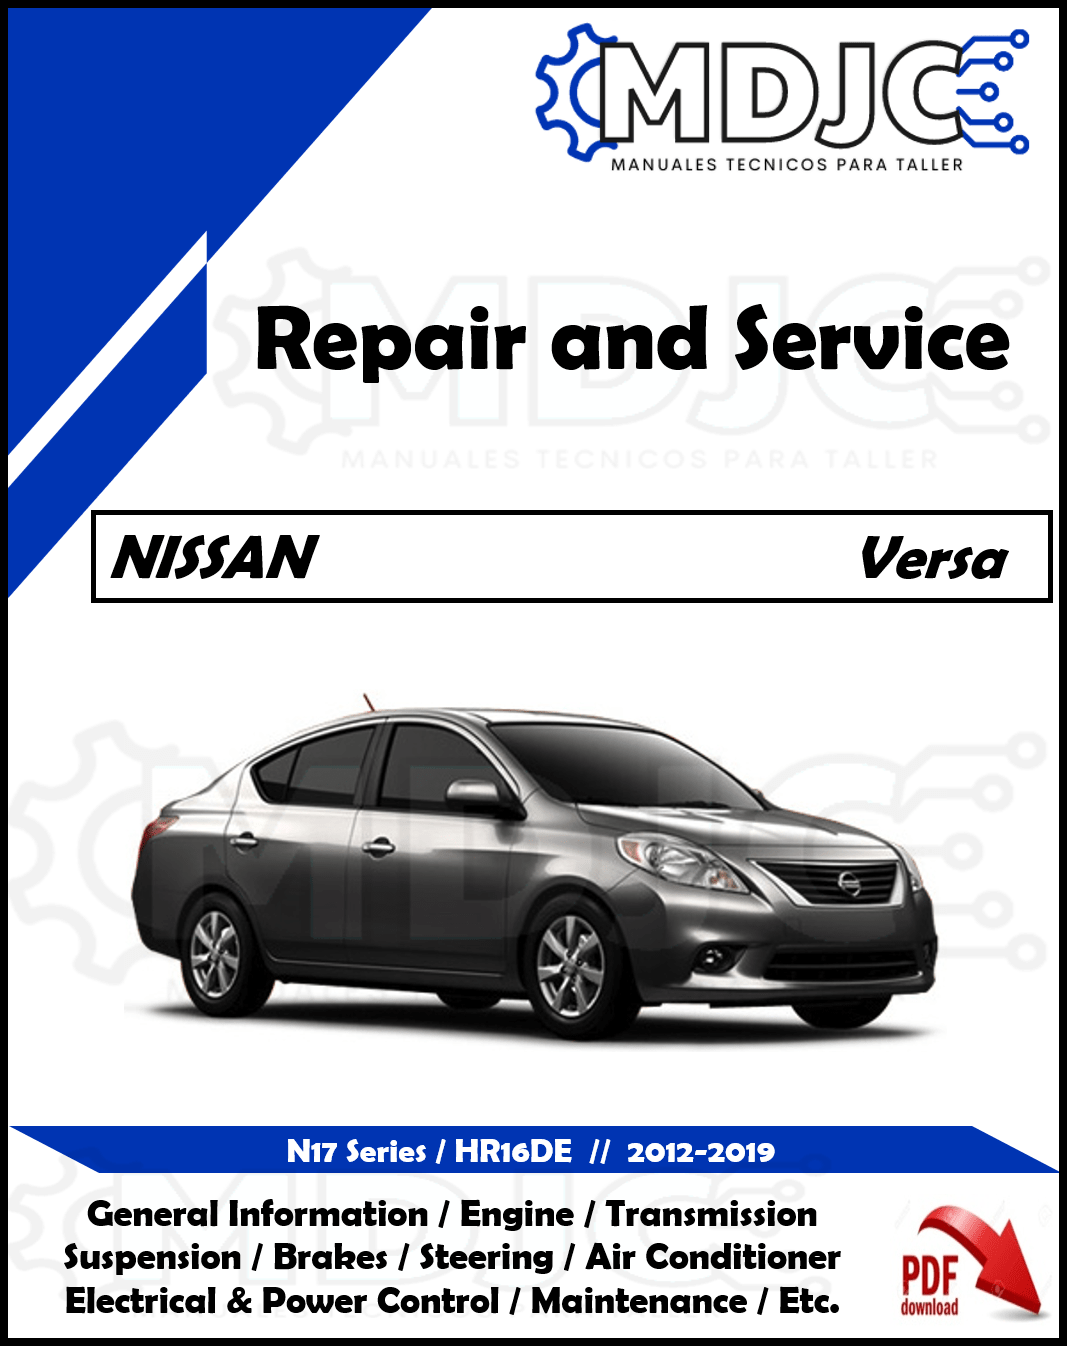 Manual de Taller (Reparación y Servicio) Nissan Versa N17 series 2012-2019